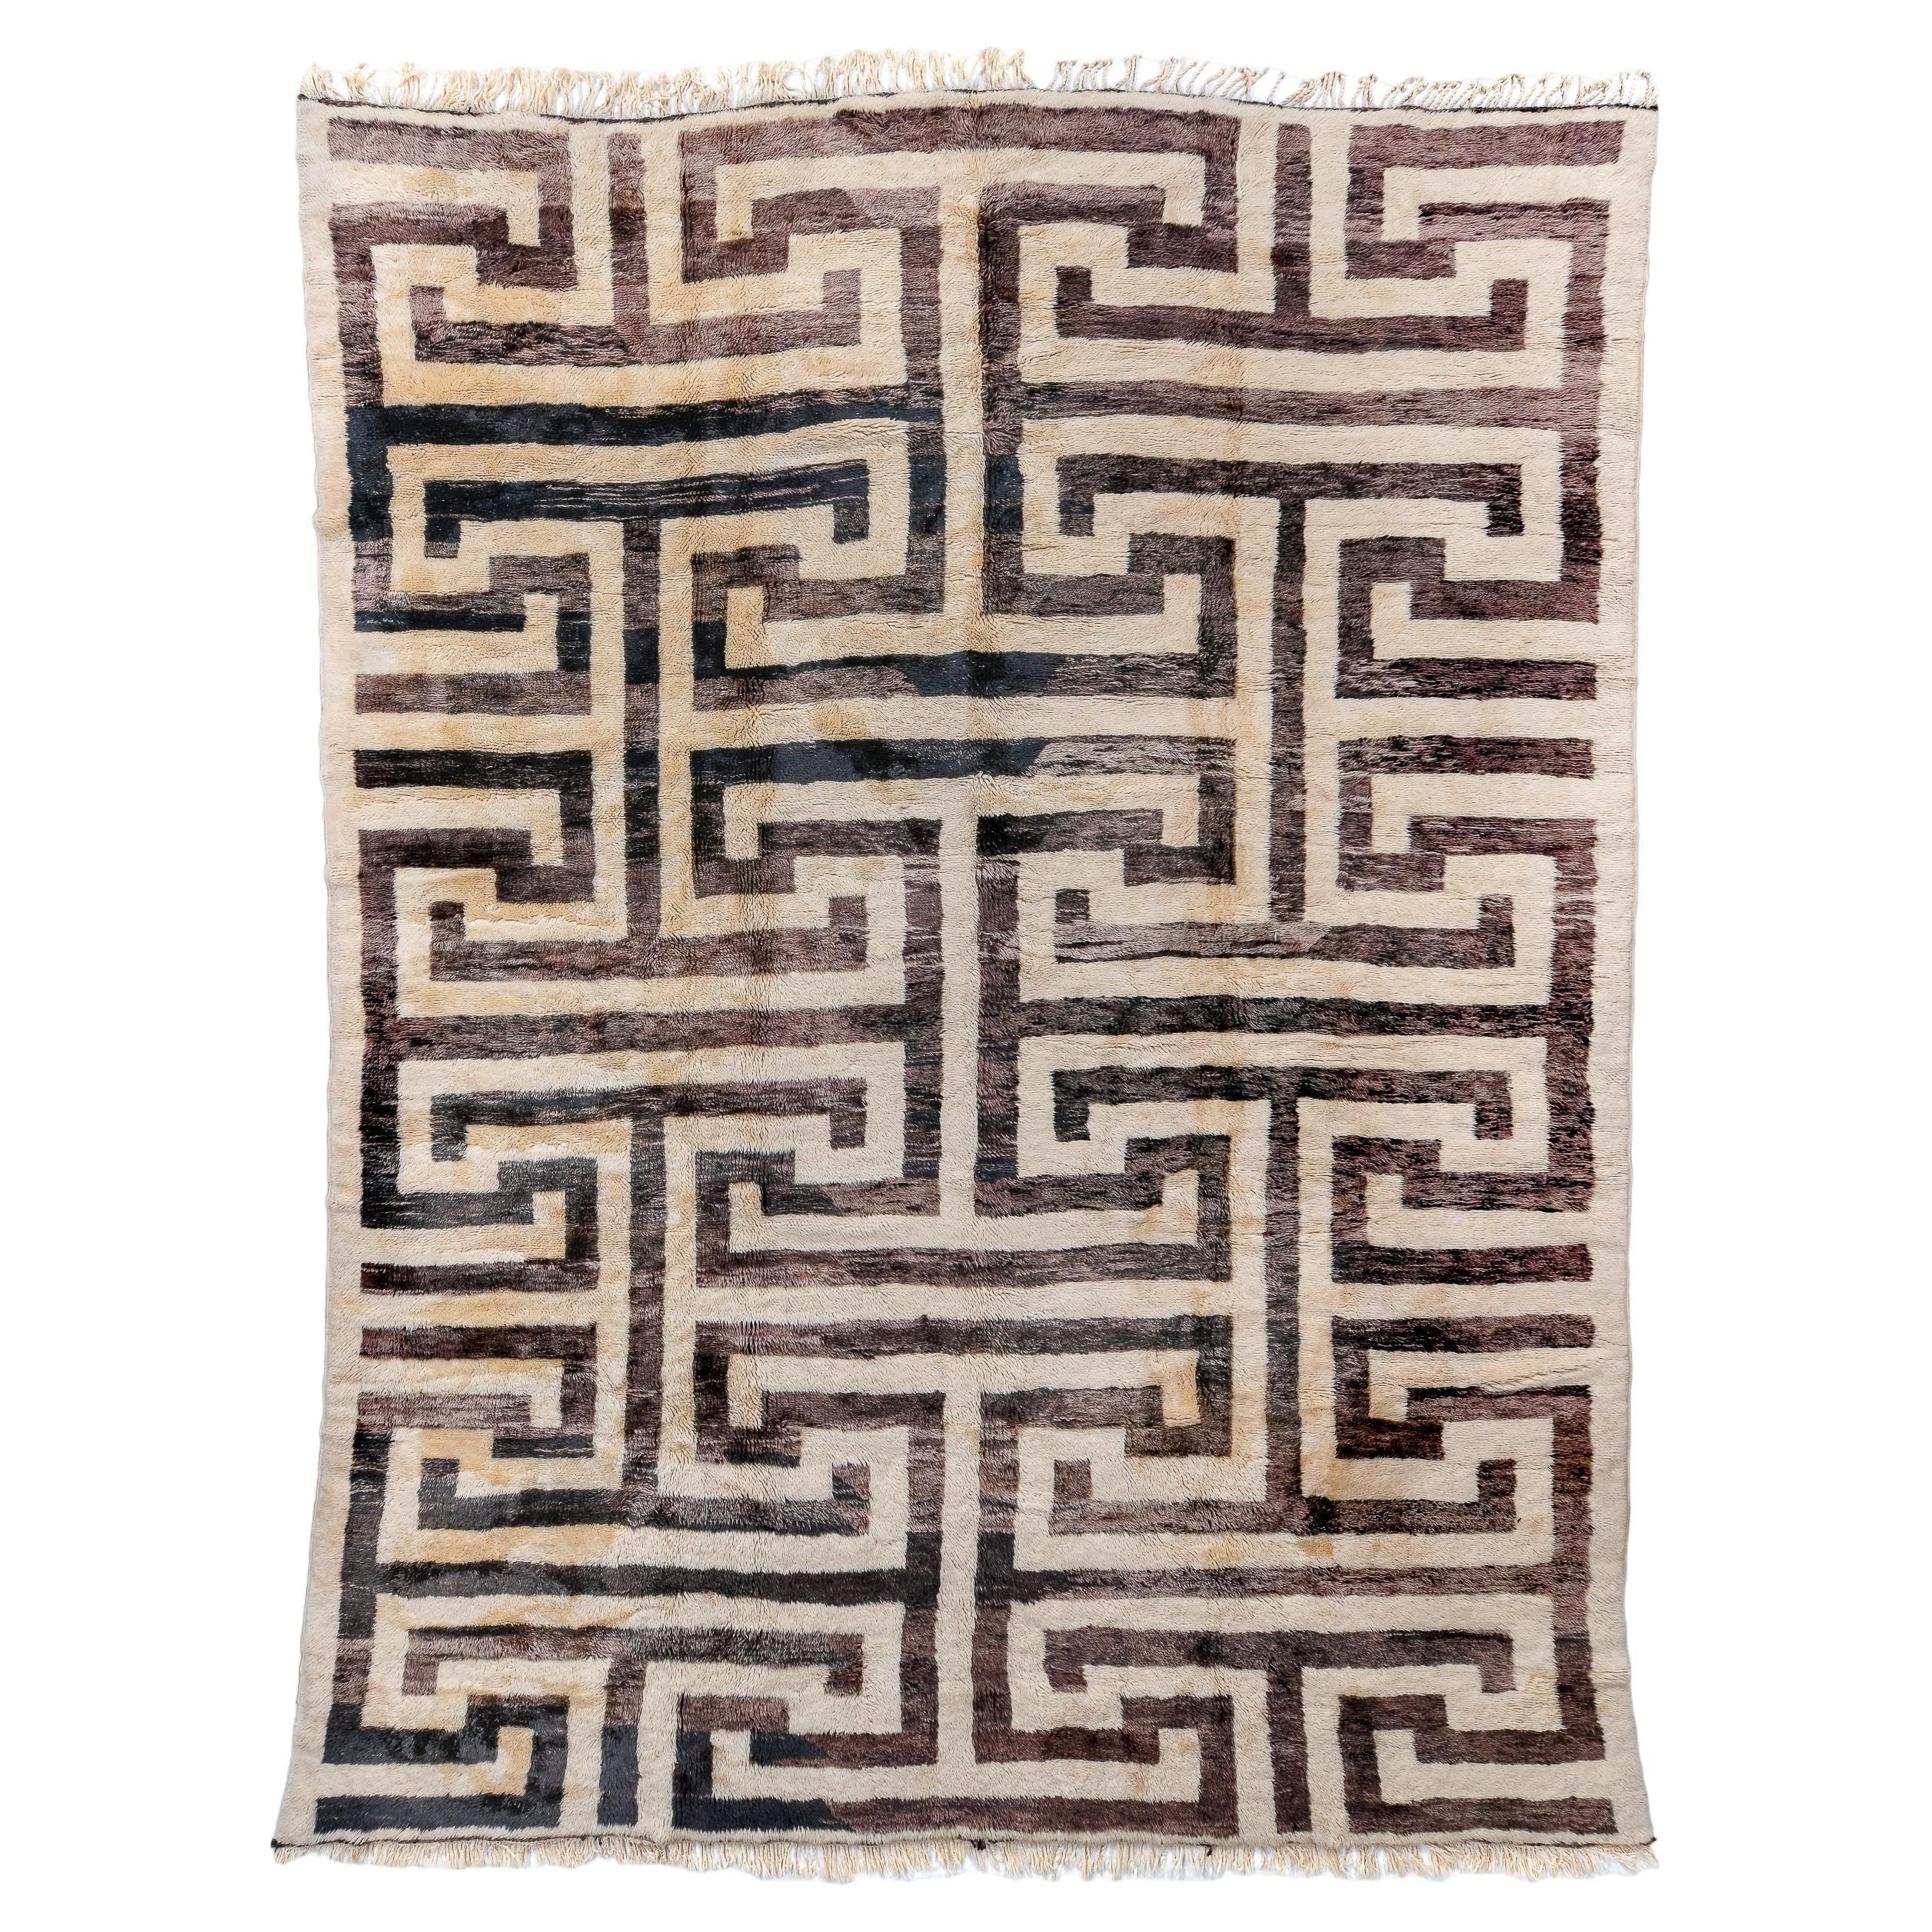 Neuer marokkanischer Teppich mit Allover-Schachtelmuster